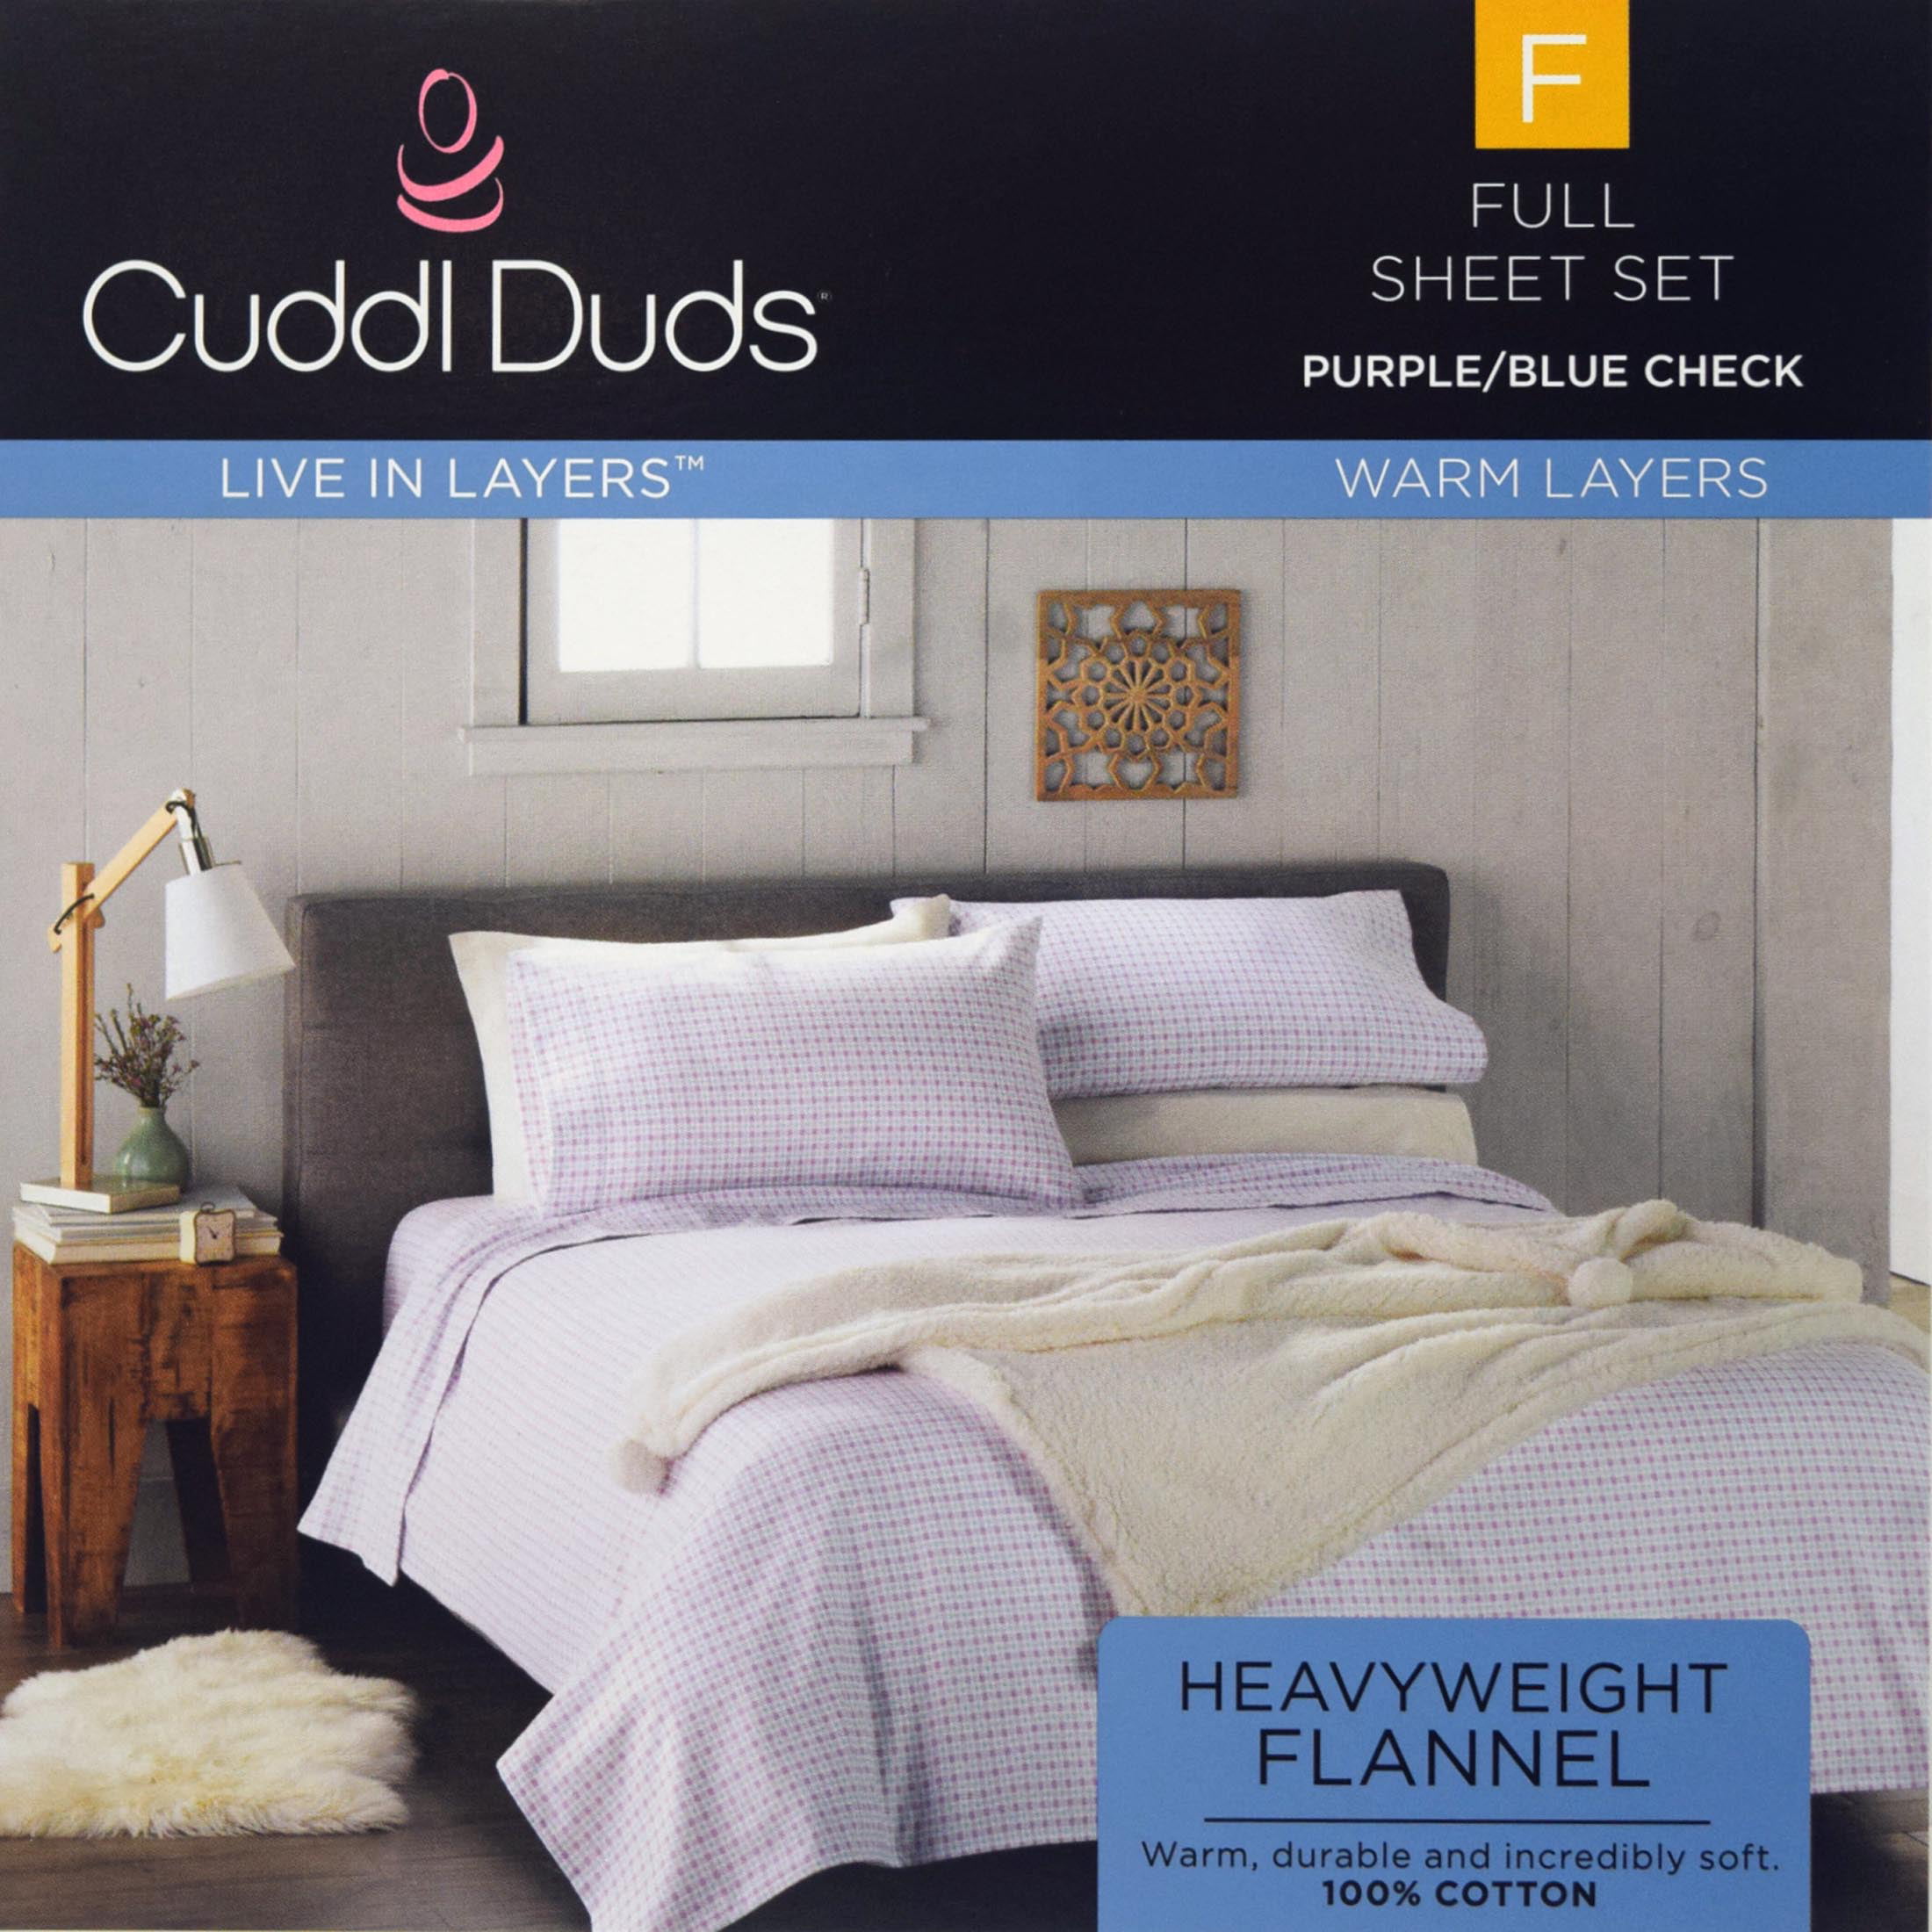 Cuddl Duds Flannel 4-piece Queen Sheet Set Purple/Blue check pattern *NEW* 